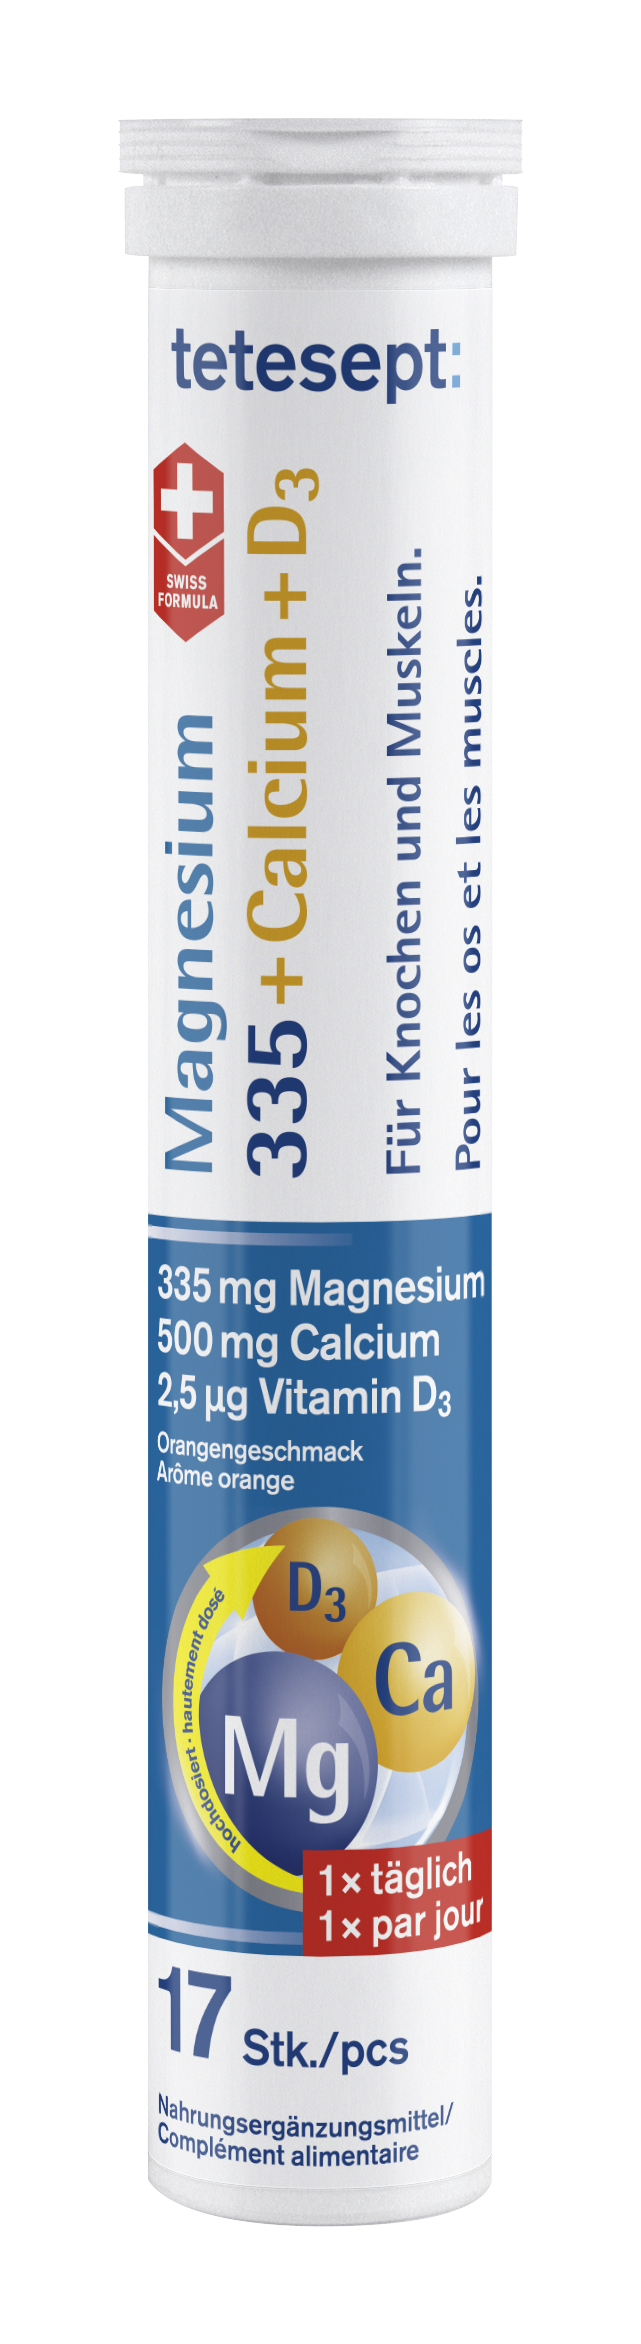 tetesept Magnesium 335 Calcium + D3 Brausetabletten